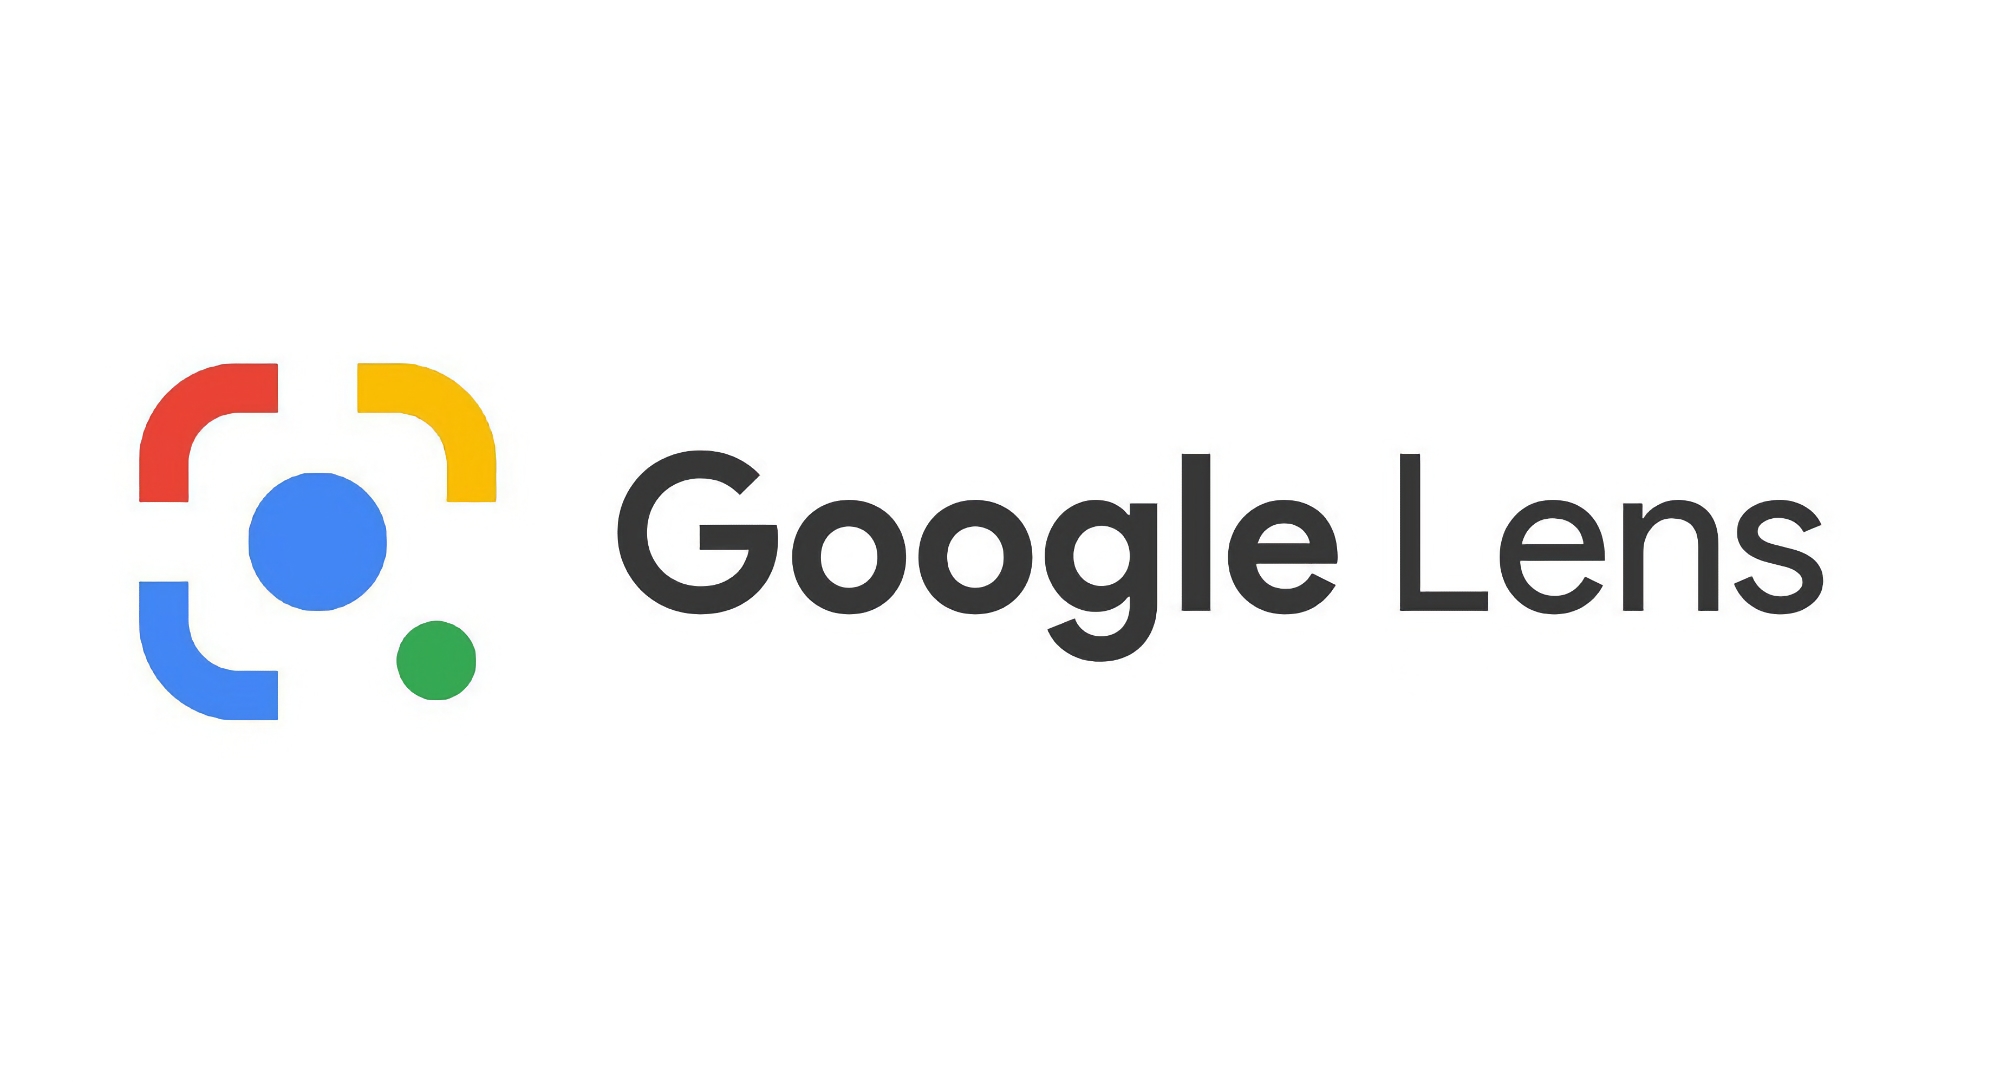 Google dodaje Google Lens do strony głównej wyszukiwania w sieci